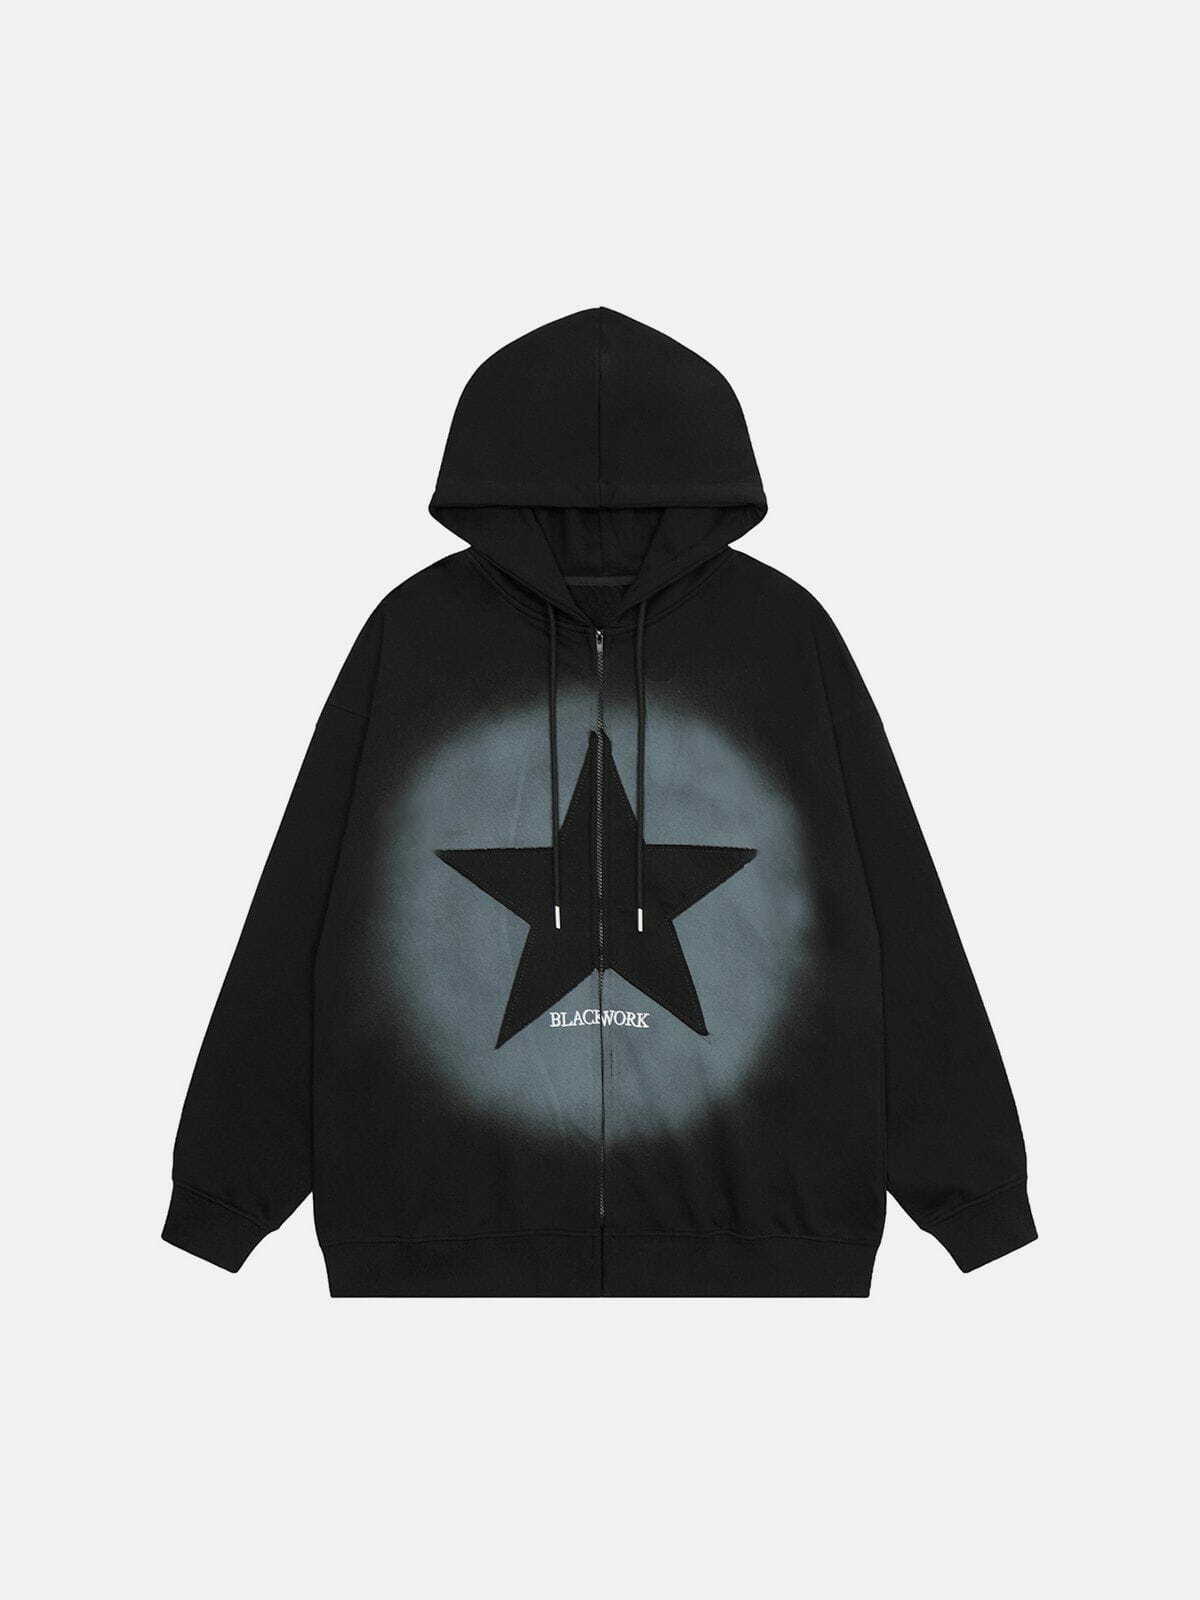 vintage pentagram zip up hoodie edgy occult streetwear 1313